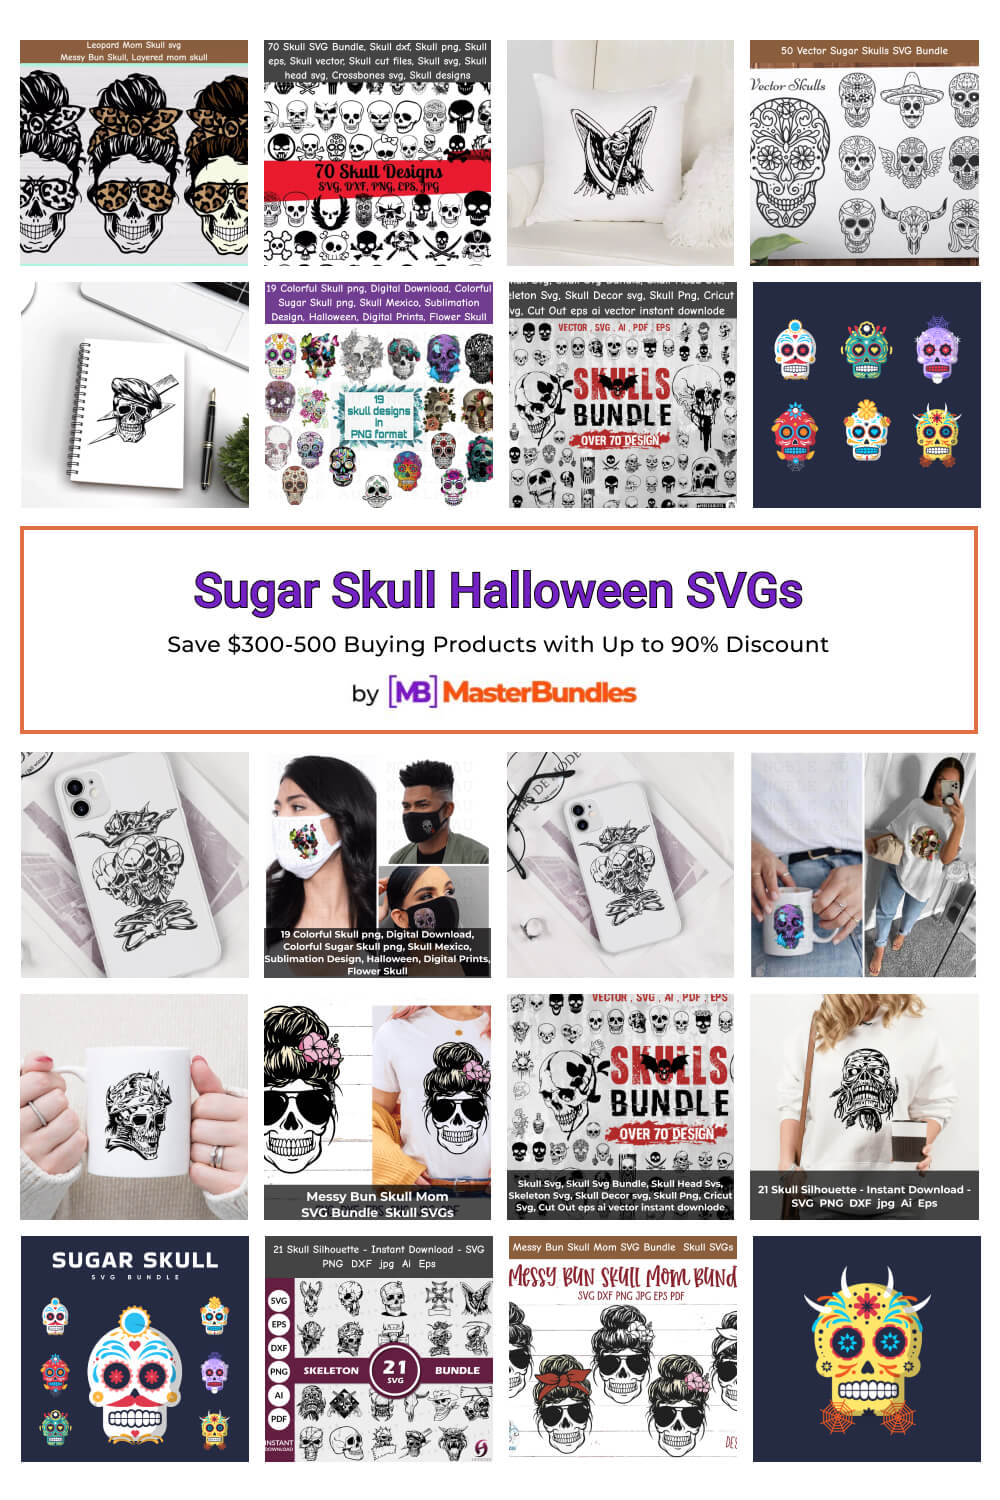 Sugar Skull Halloween Svgs 2 